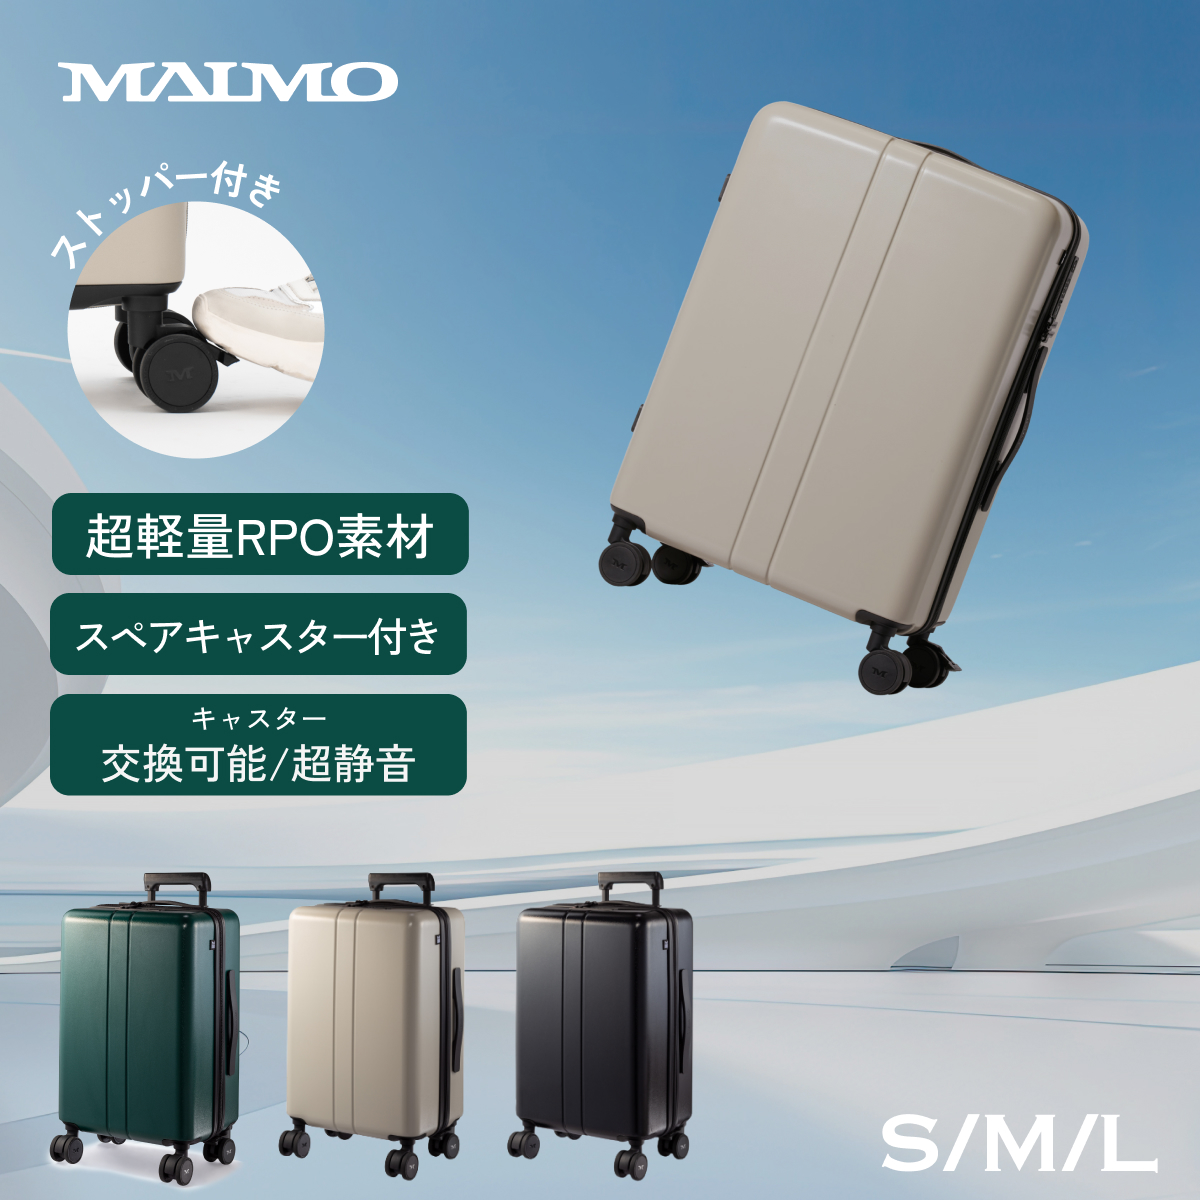 新品 MAIMO スーツケース 新素材RPO Mサイズ ベージュ 3.4kg - 旅行用